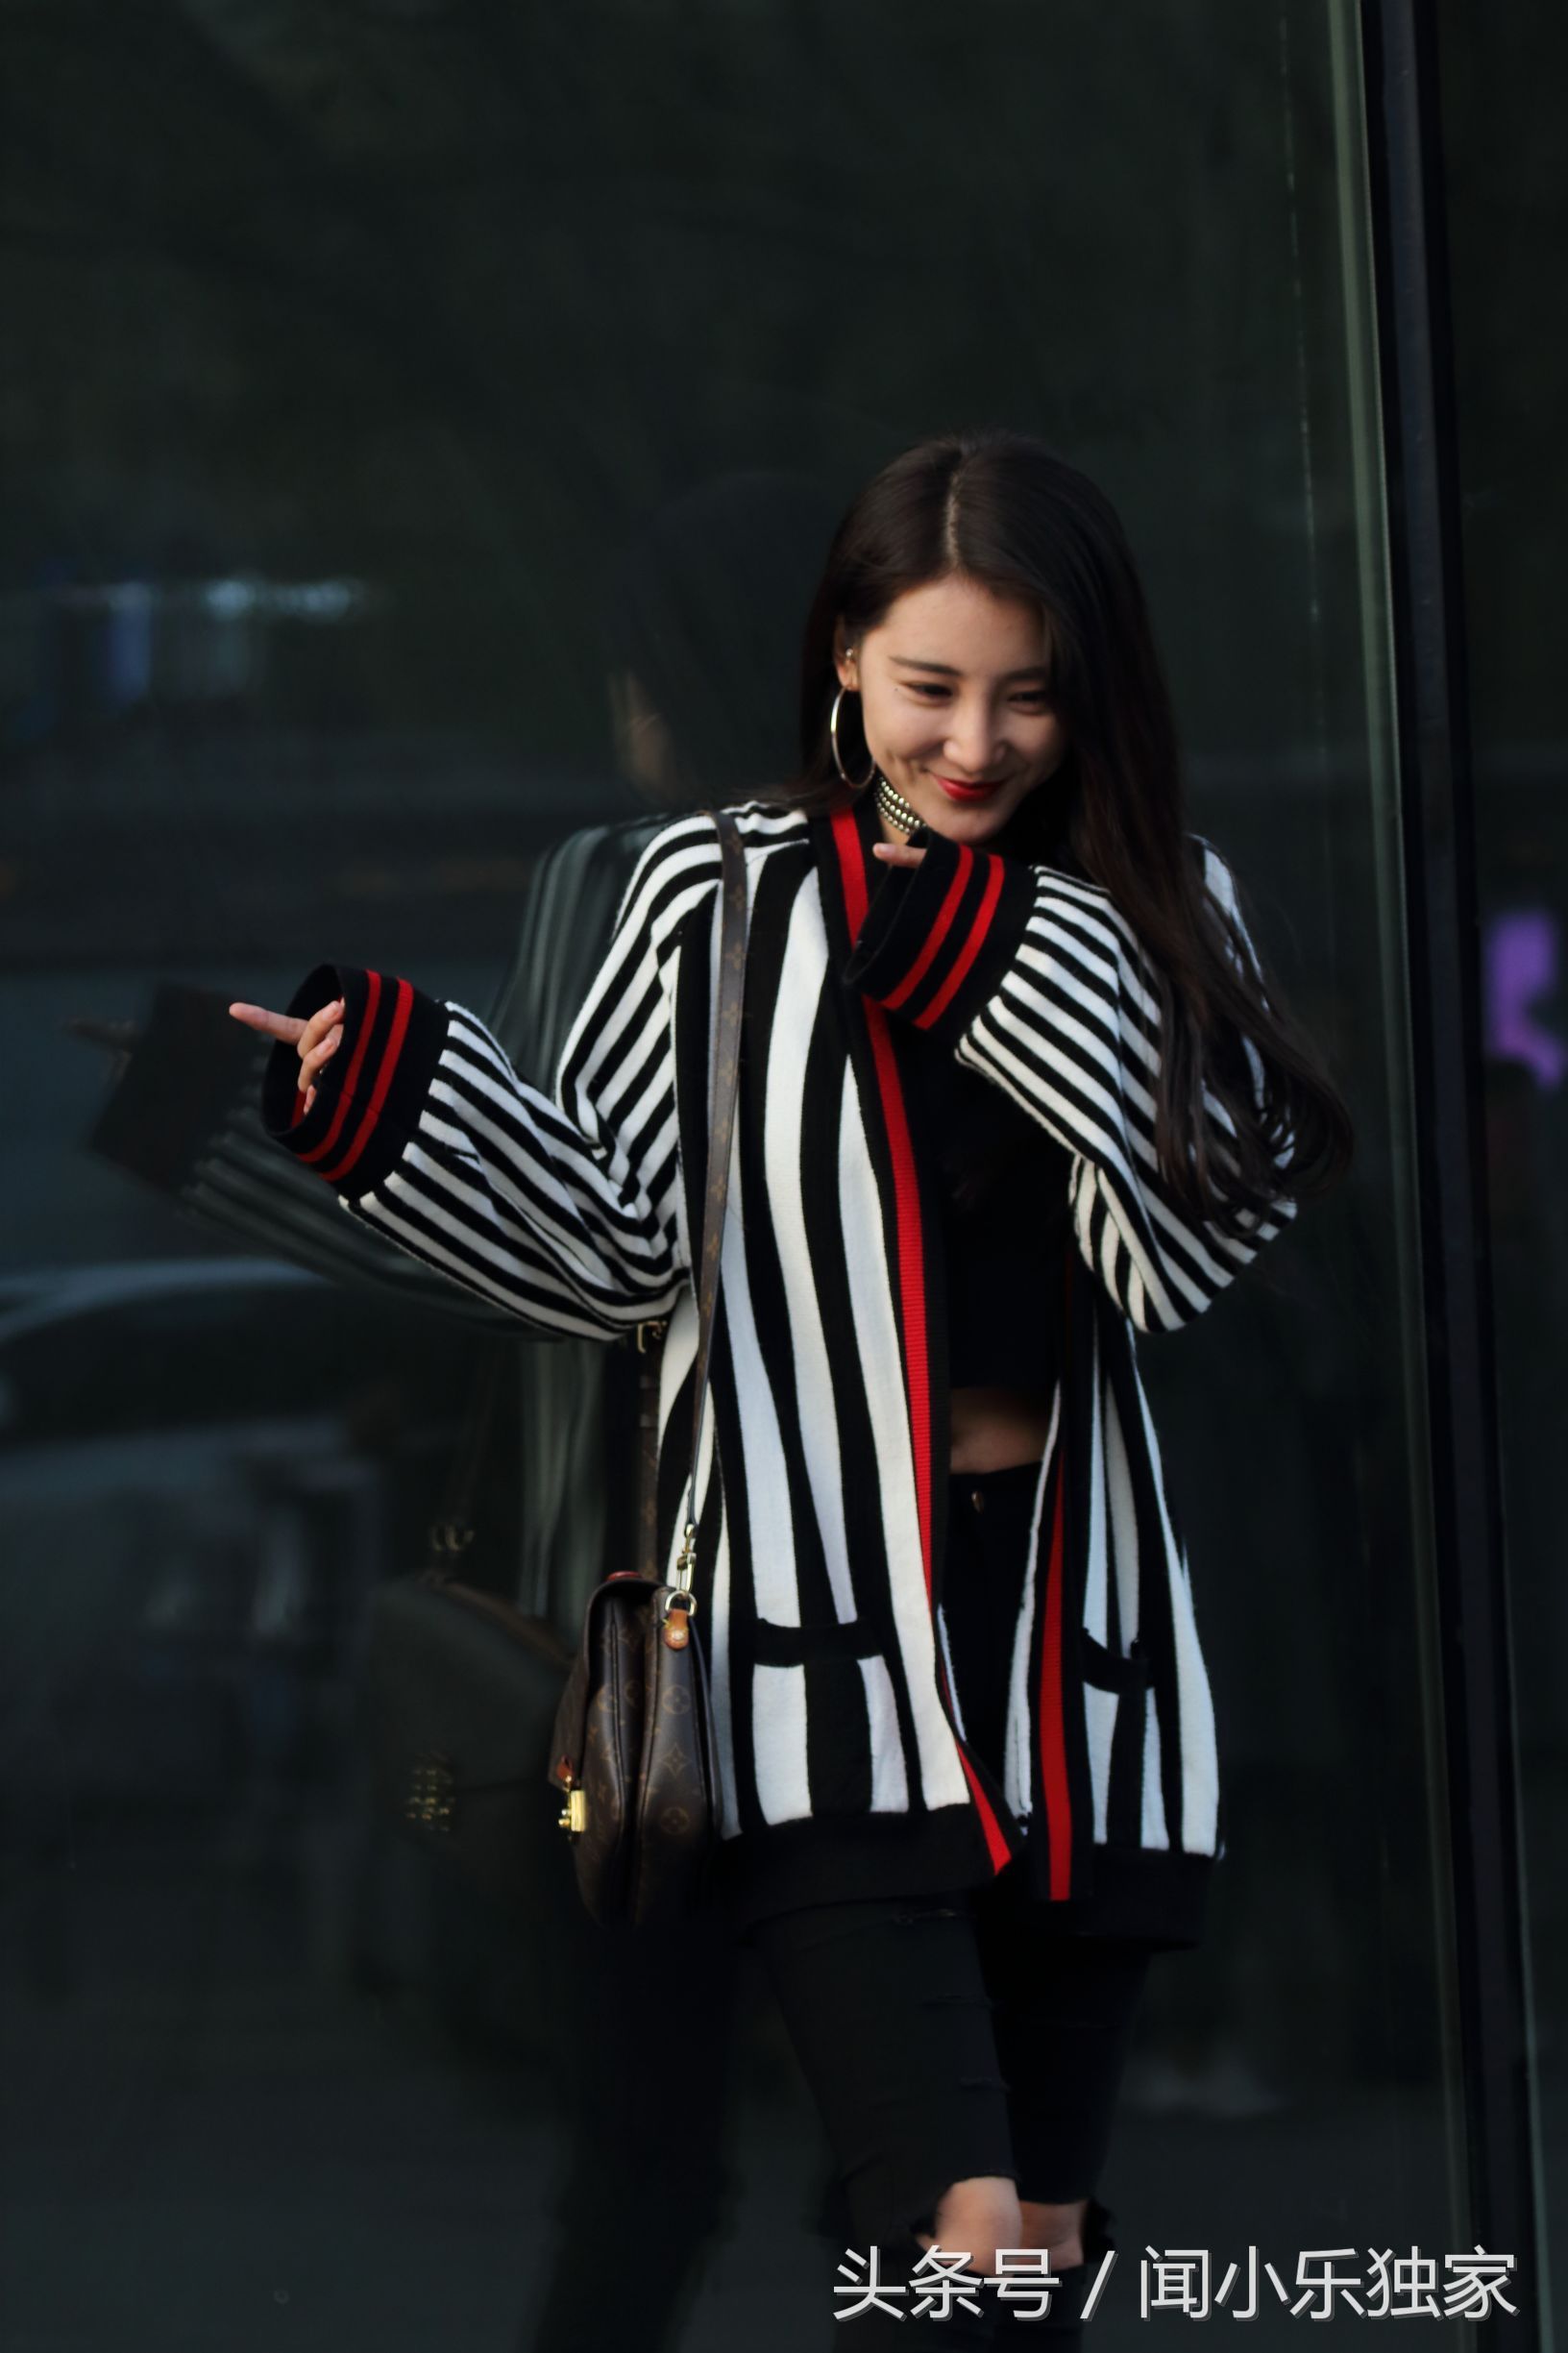 北京街拍:三里屯拍到爱笑的女孩,黑白红相配的